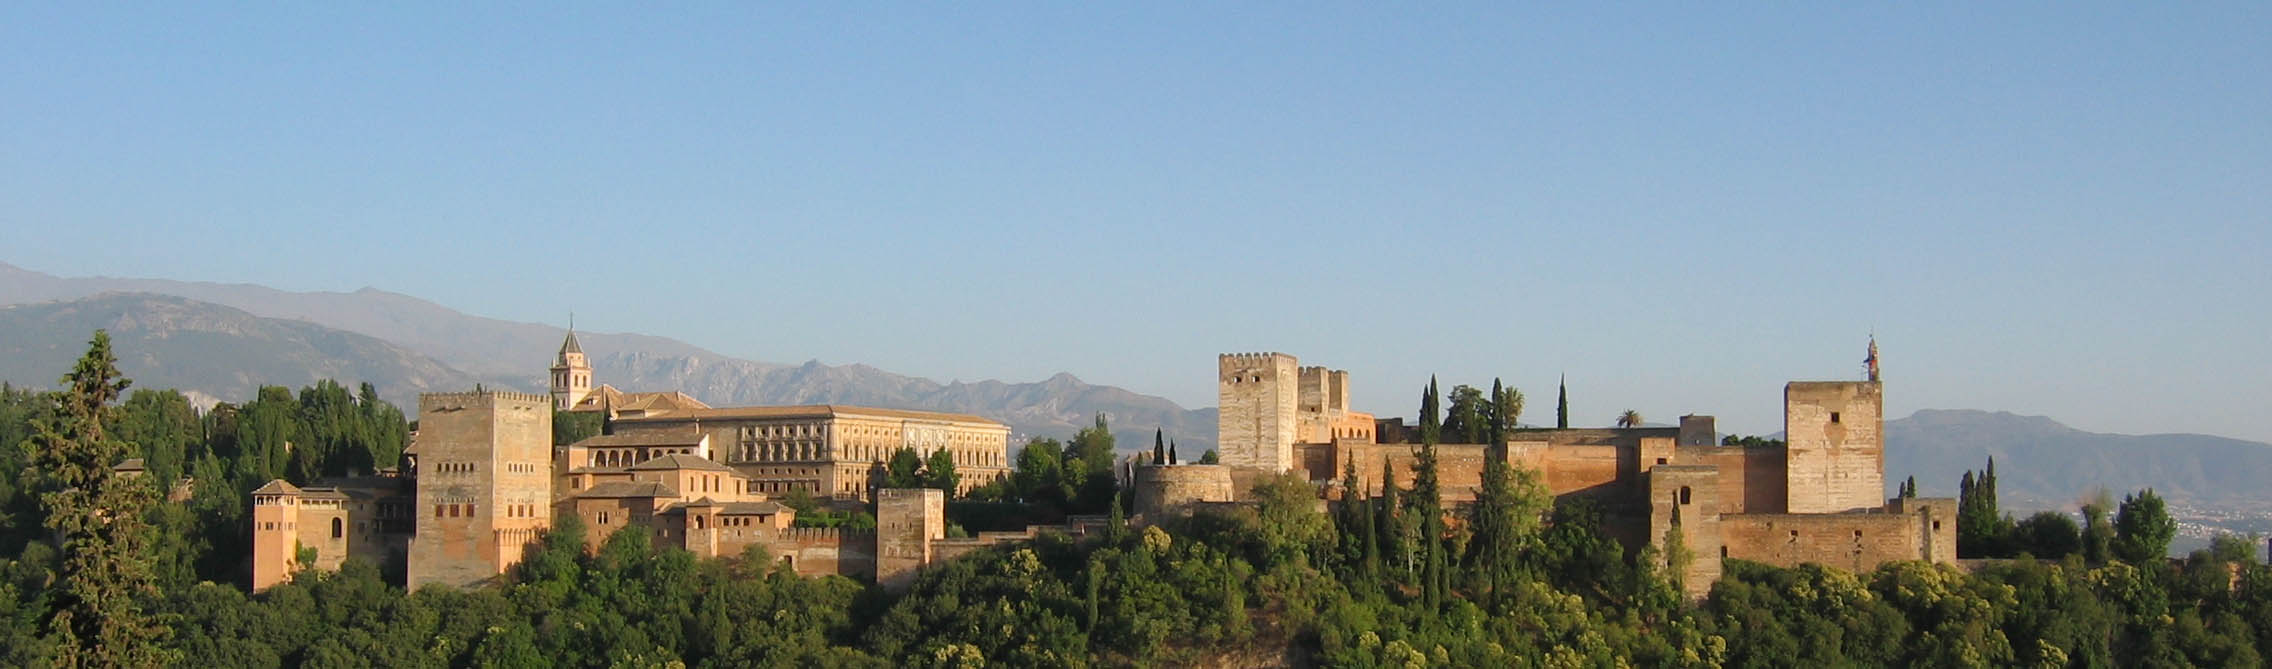 Alhambra - Granada desde Albaicin 